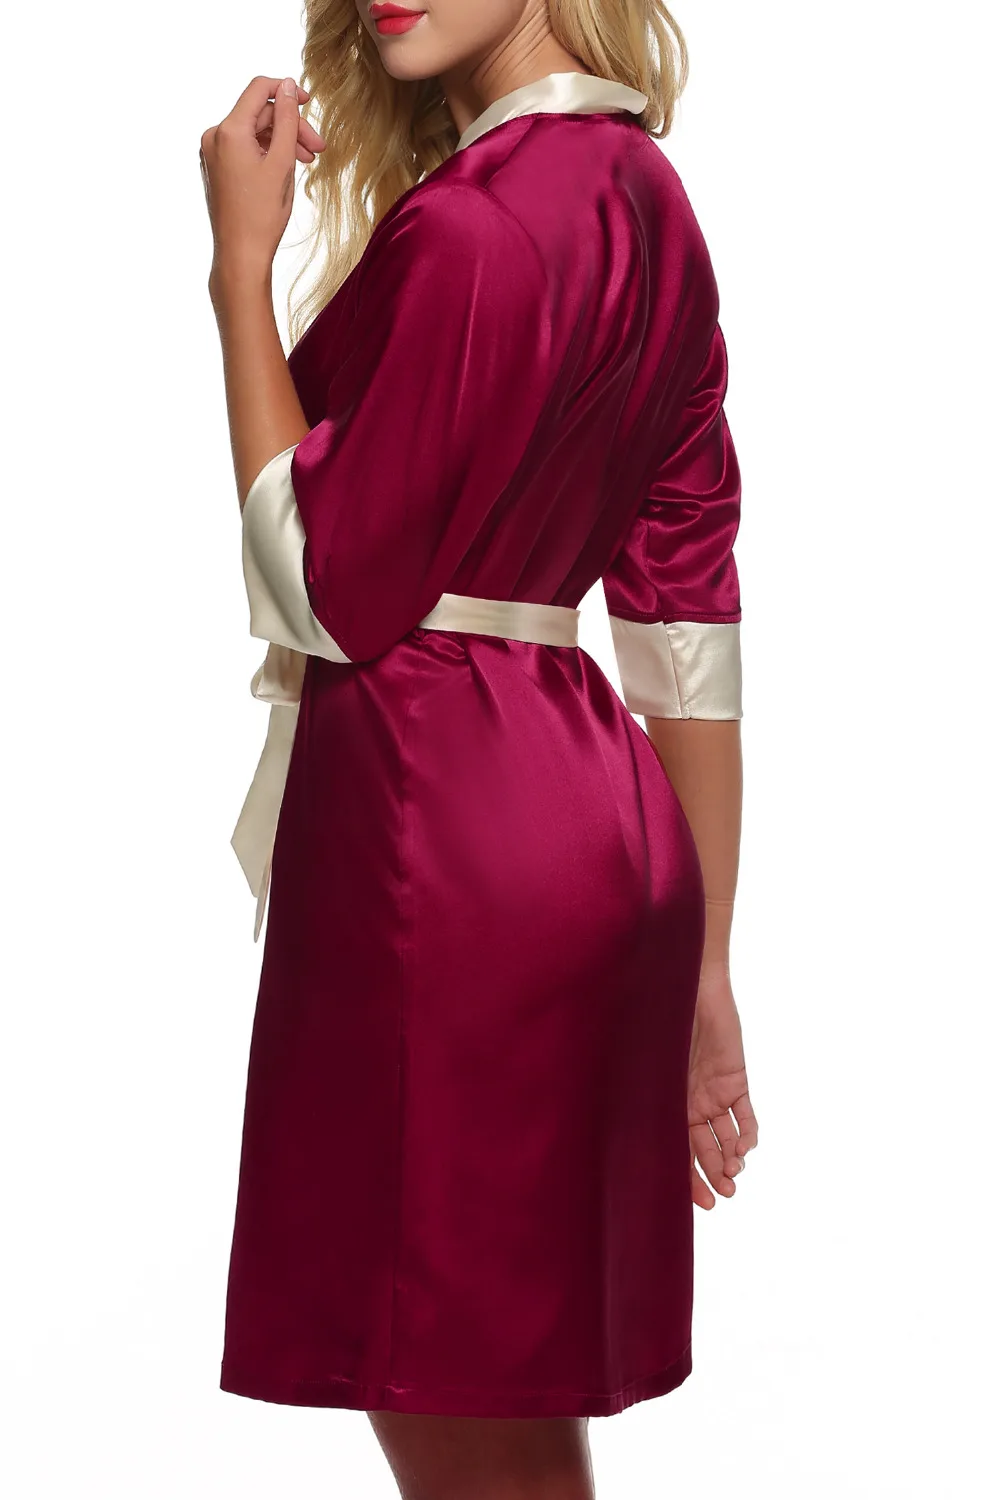 Ekouaer для женщин кимоно халат по колено сексуальное женское белье пижамы Короткие атласные кружево ночное невесты Халаты XS-XL